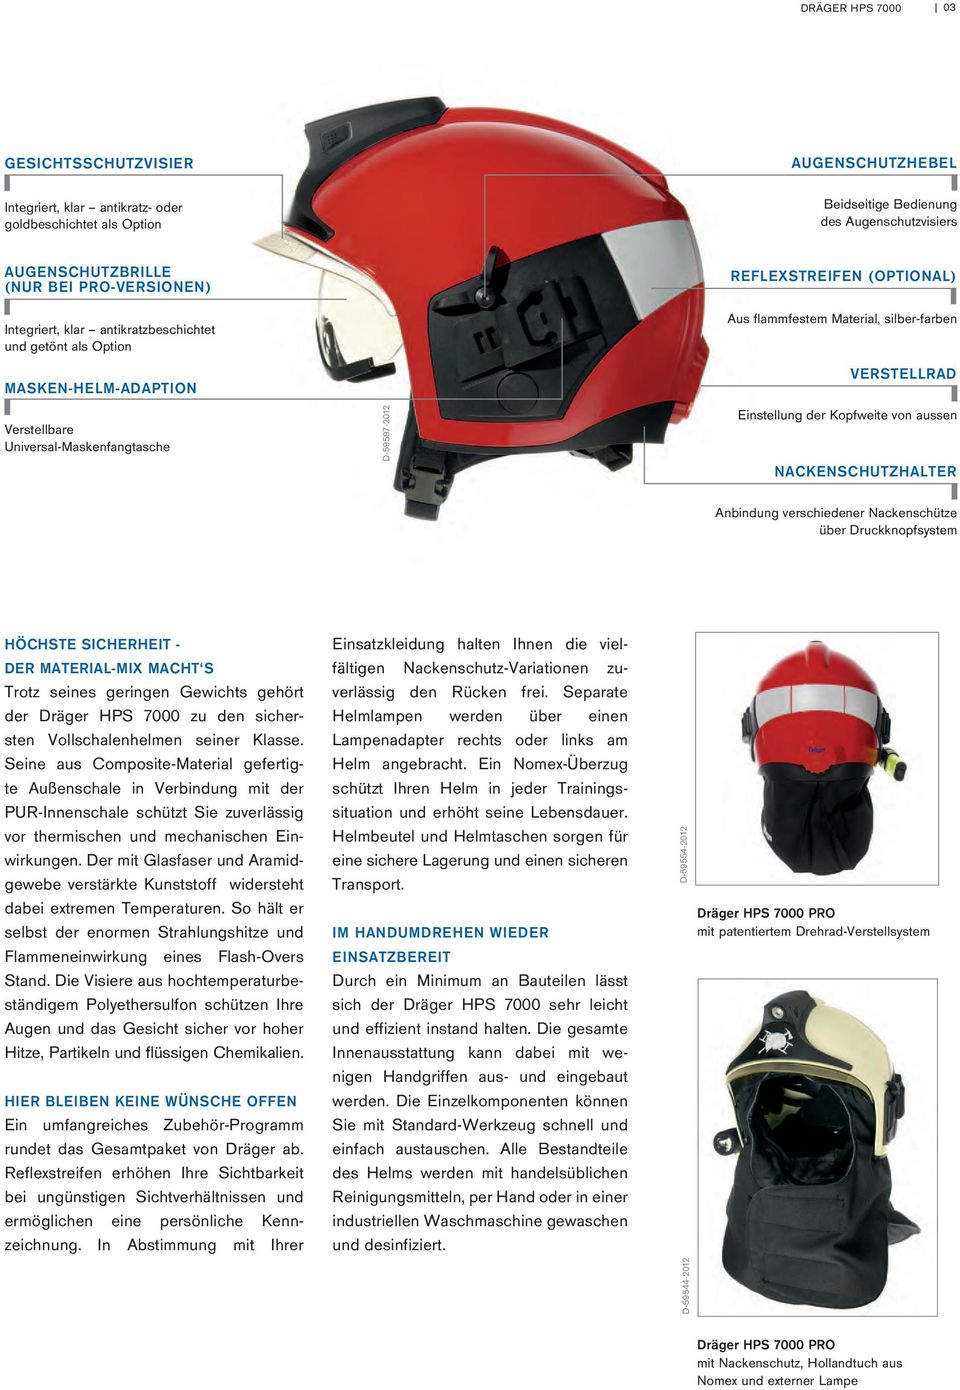 Universal-Maskenfangtasche D-59597-2012 Einstellung der Kopfweite von aussen NACKENSCHUTZHALTER Anbindung verschiedener Nackenschütze über Druckknopfsystem HÖCHSTE SICHERHEIT - DER MATERIAL-MIX MACHT